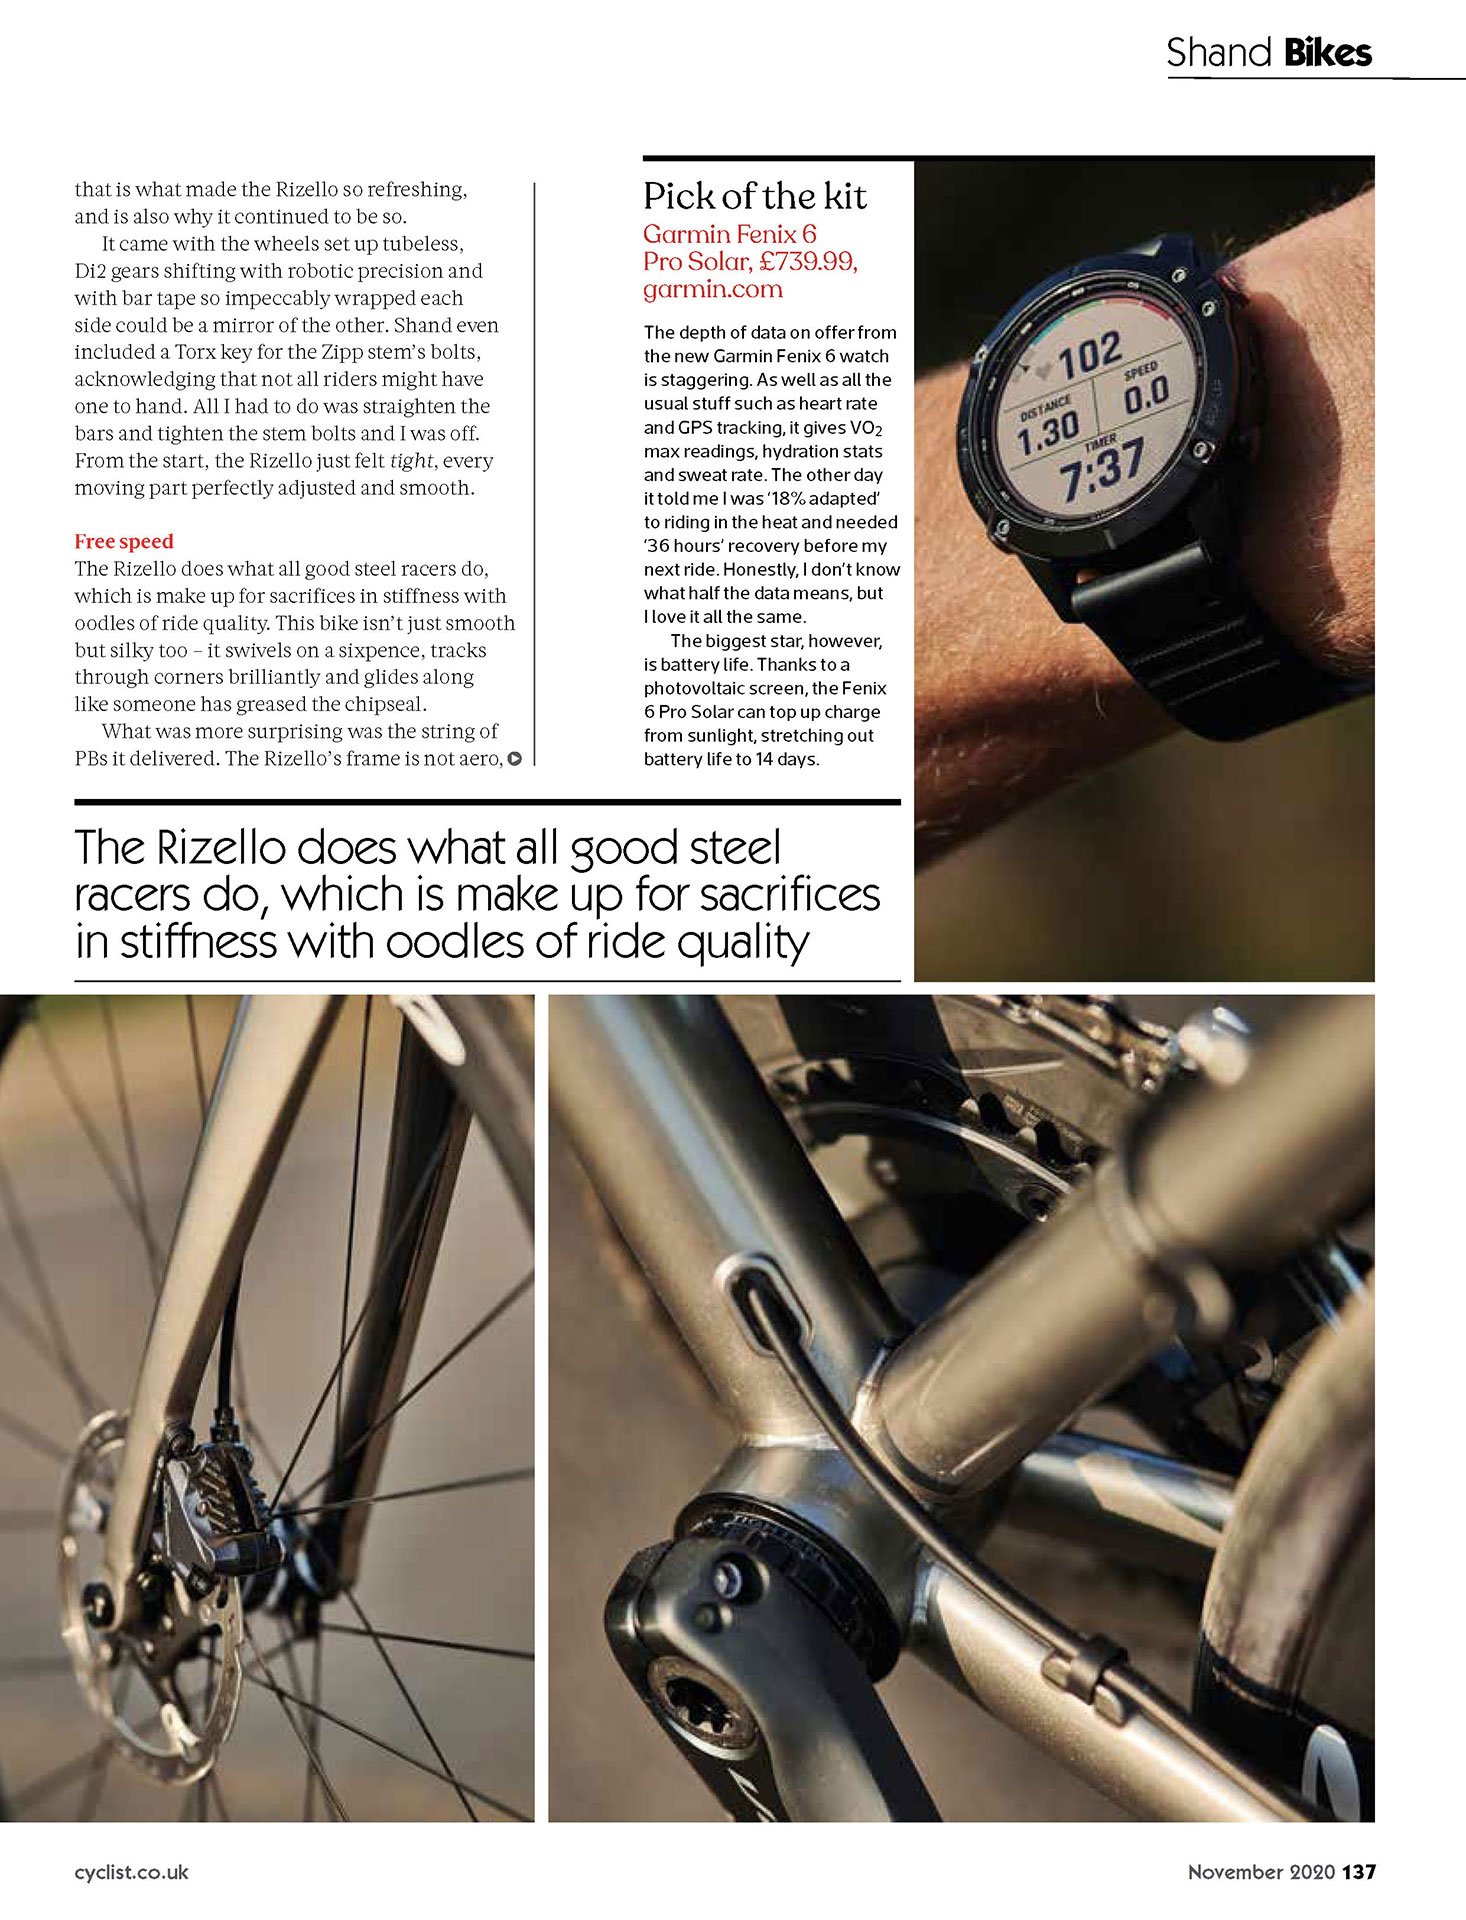 Cyclist magazine Rizello review page 2